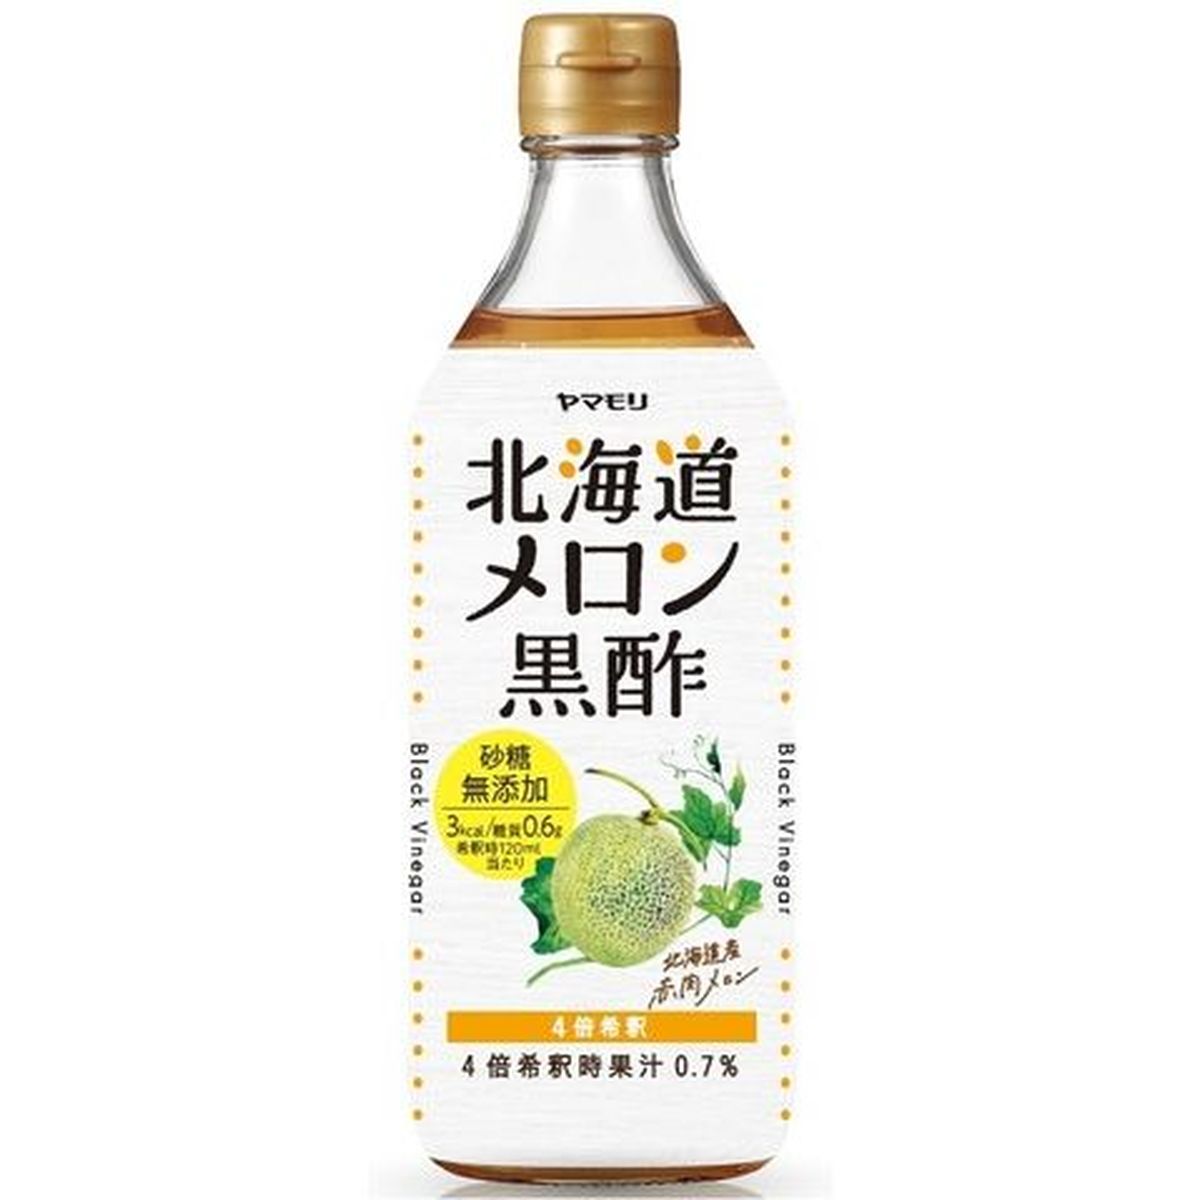 【6個入リ】ヤマモリ 砂糖無添加北海道メロン黒酢 瓶 500ml